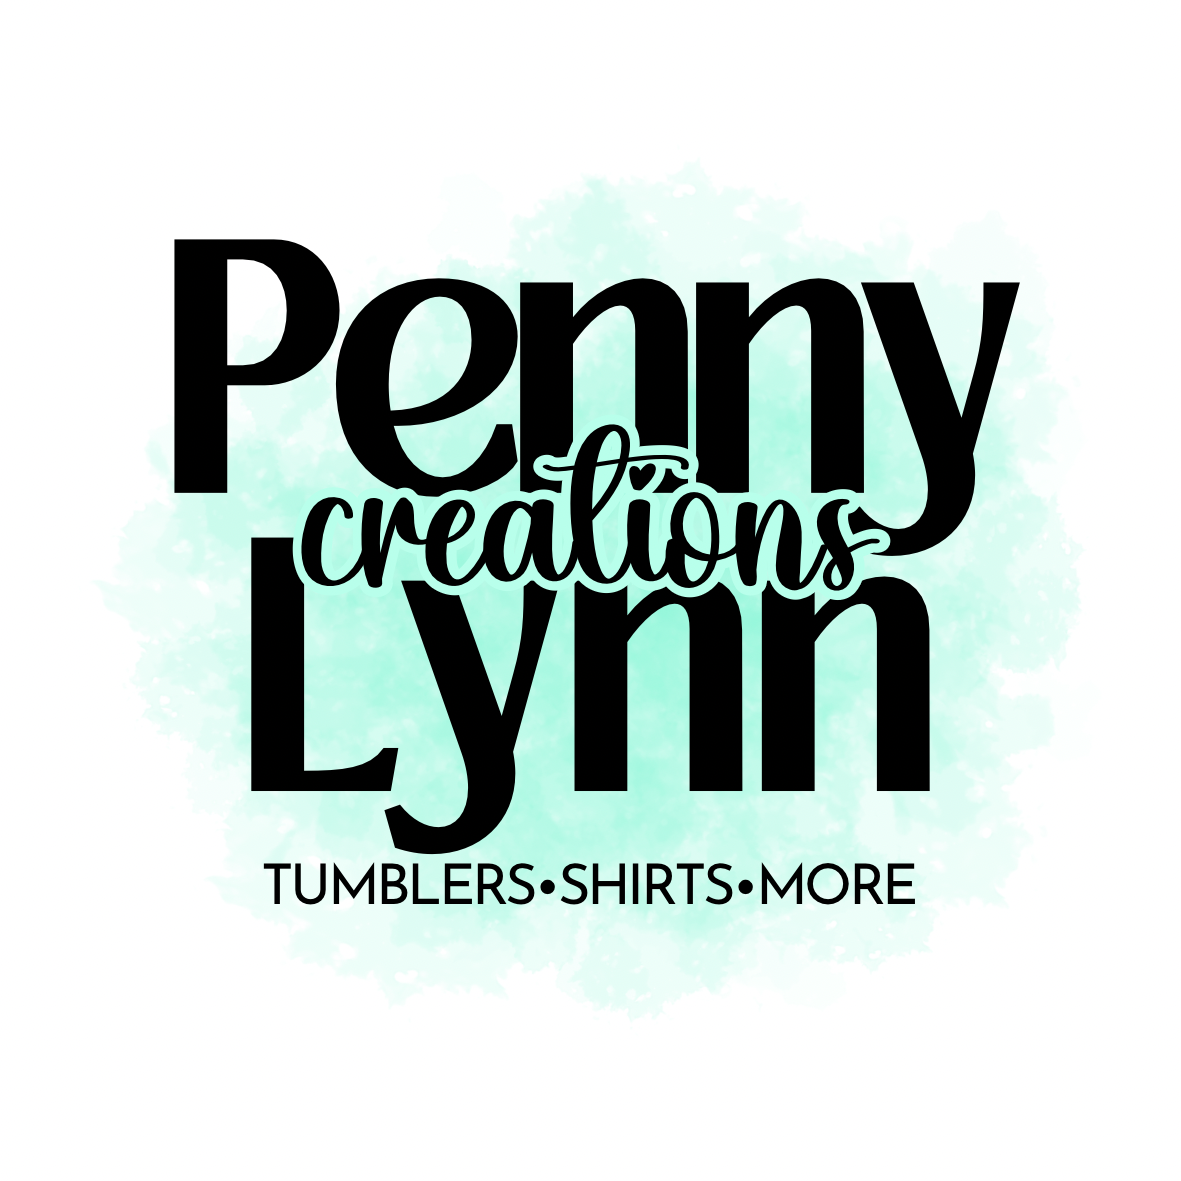 Penny Lynn Creations